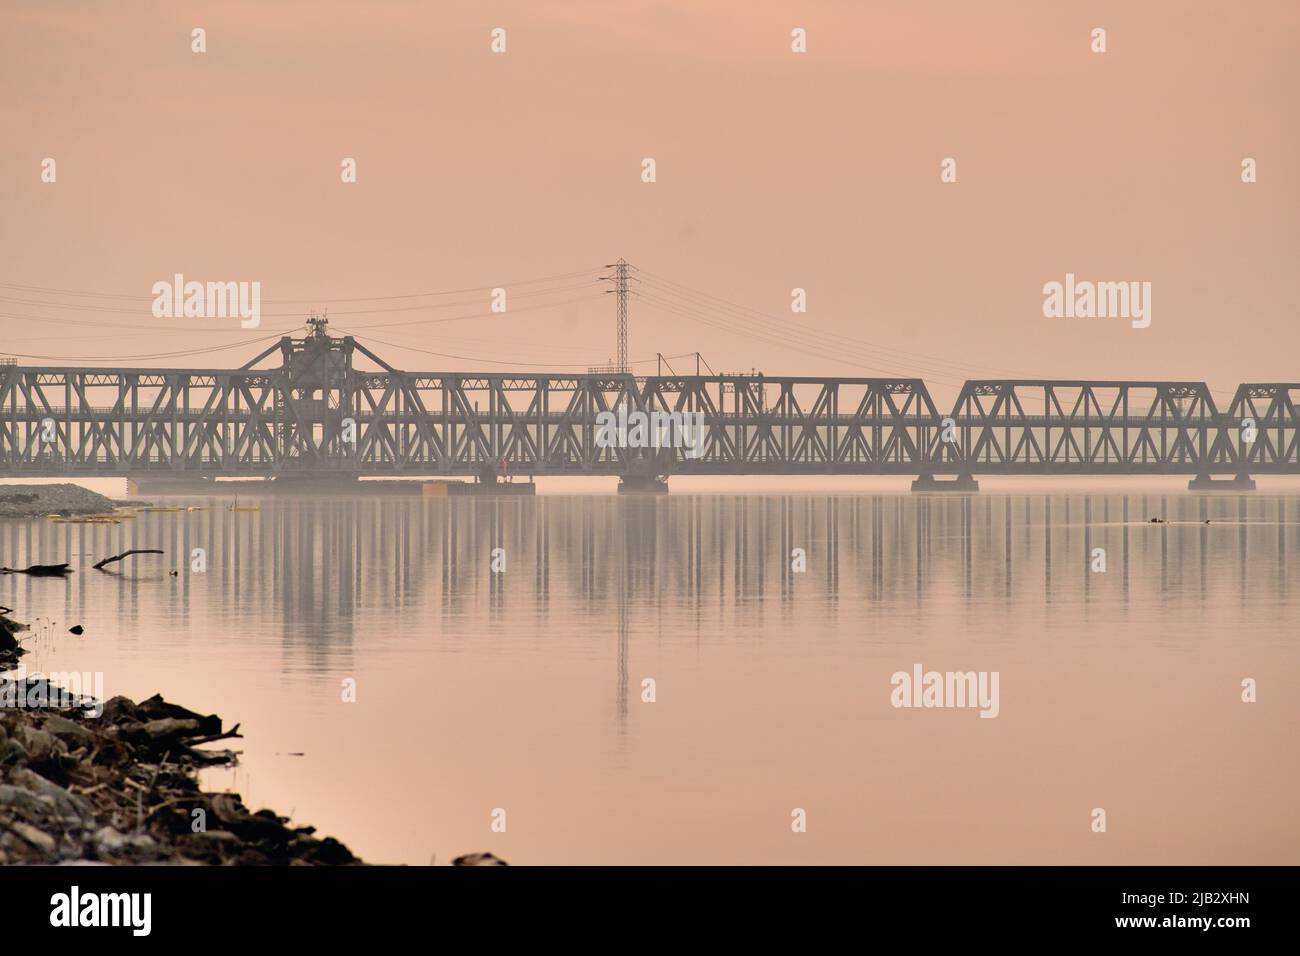 Fort Madison, Iowa, Stati Uniti. Il ponte sospeso della BNSF Railway attraversa il fiume Mississippi in una mattinata molto calda e nebbia. Foto Stock